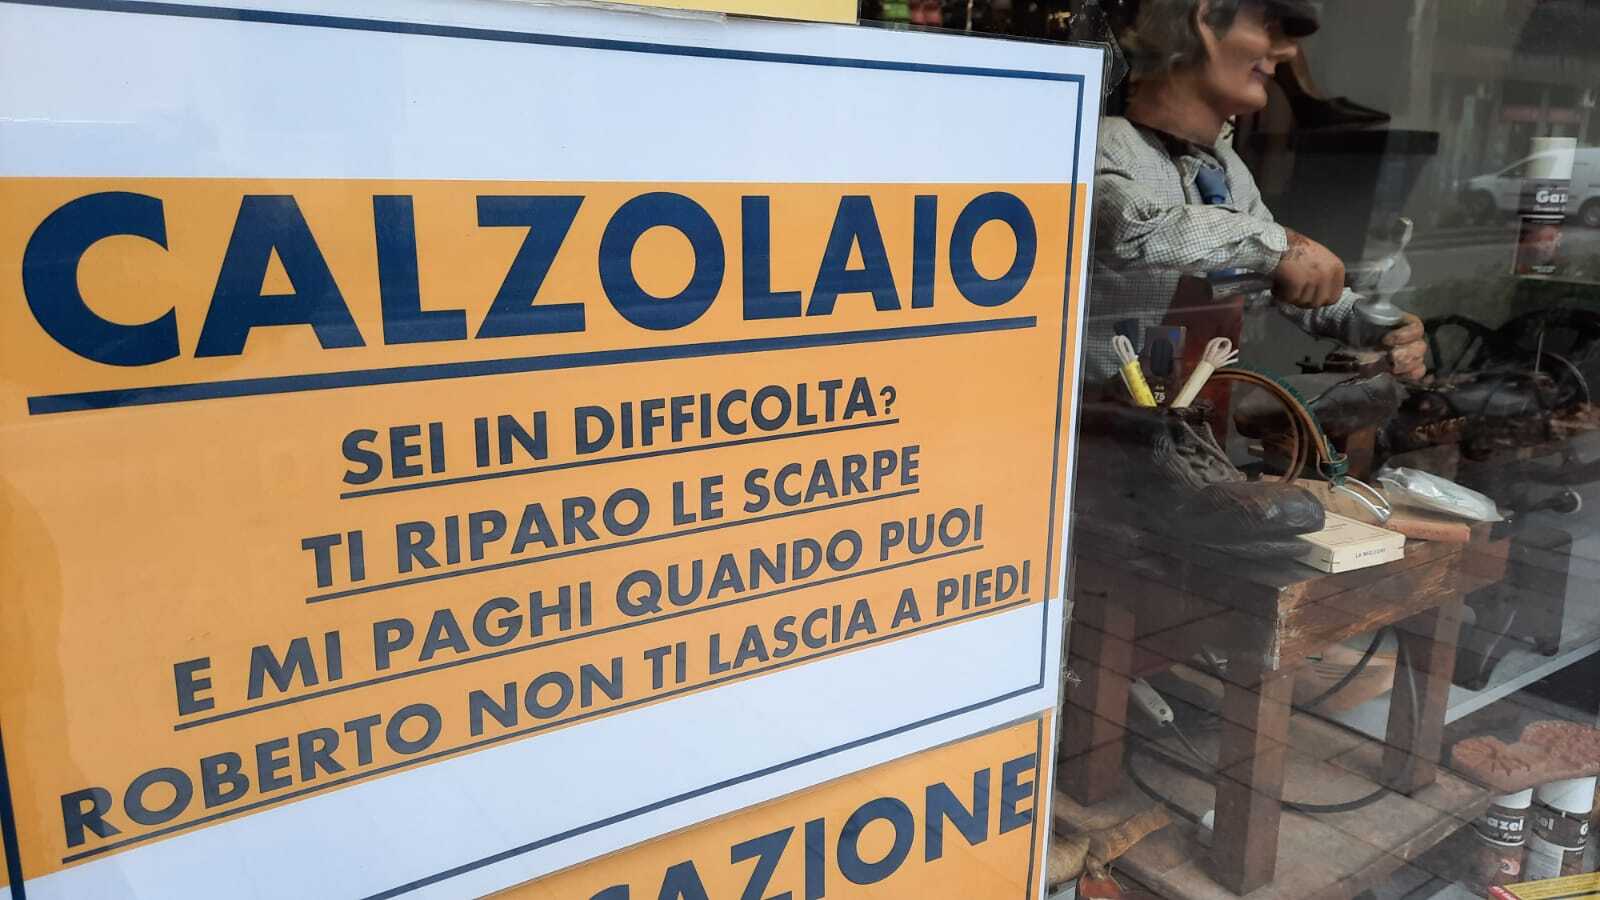 Il calzolaio Visentin in provincia di Milano e la sua iniziativa solidale: "Paghi quando puoi".